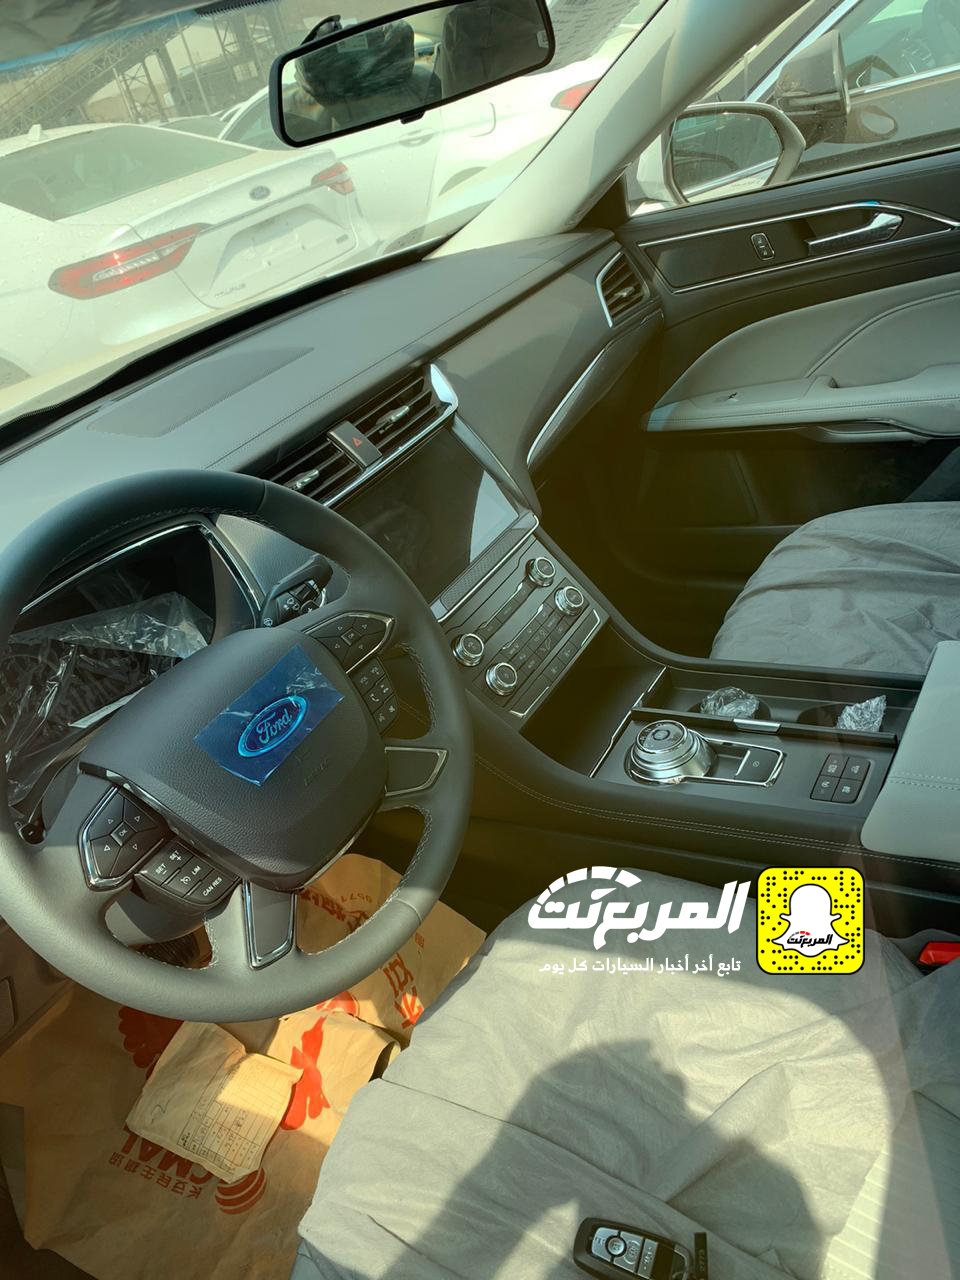 "بالصور" وصول فورد توروس 2020 الجديدة كلياً الى السعودية + التفاصيل Ford Taurus 39